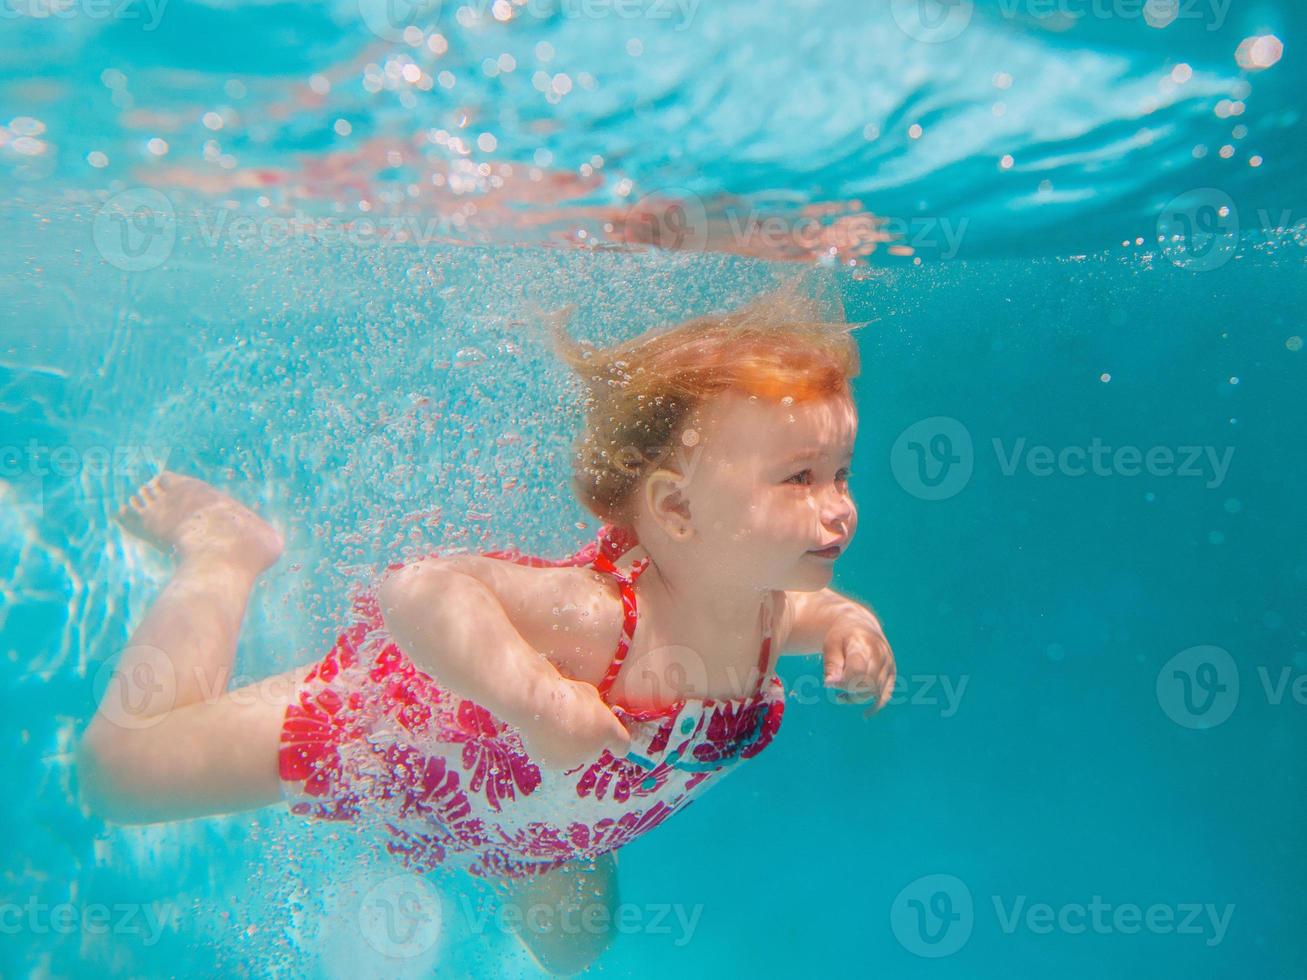 lachende babymeisje in schattige moderne jurk onderwater duiken in blauwe zwembad. actieve levensstijl, zwemles voor kinderen met ouders. watersportactiviteit tijdens gezinszomervakantie in resort foto